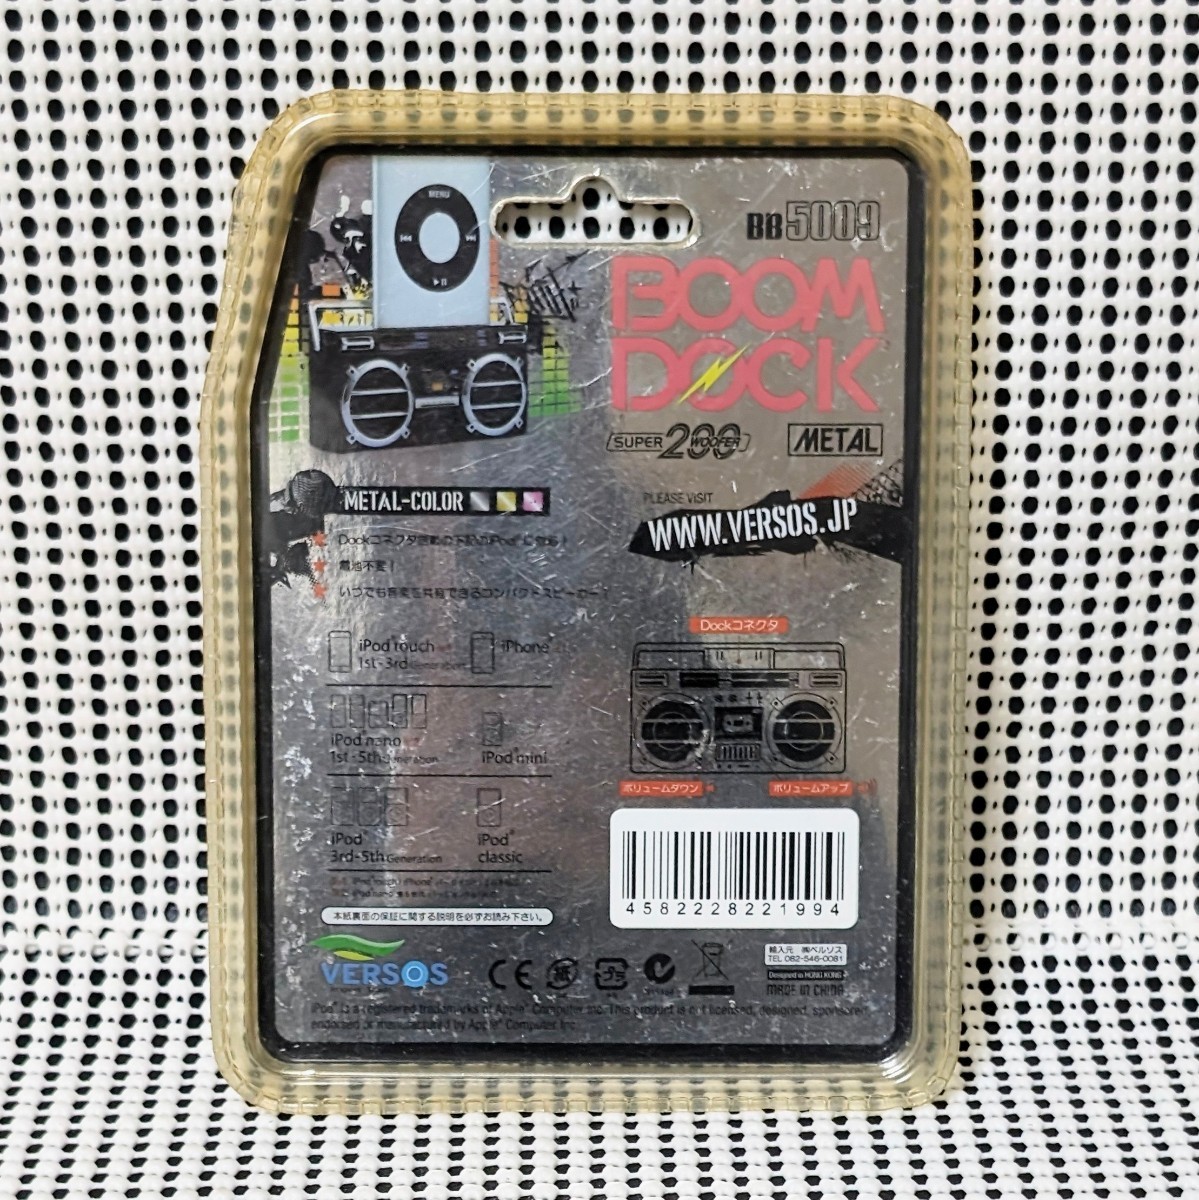 未使用保管品 当時物 希少レア VERSOS BOOM DOCK BB5009 SUPER200WOOFER METAL ミニチュア・ラジカセ ベルソス iPod用スピーカー_画像2